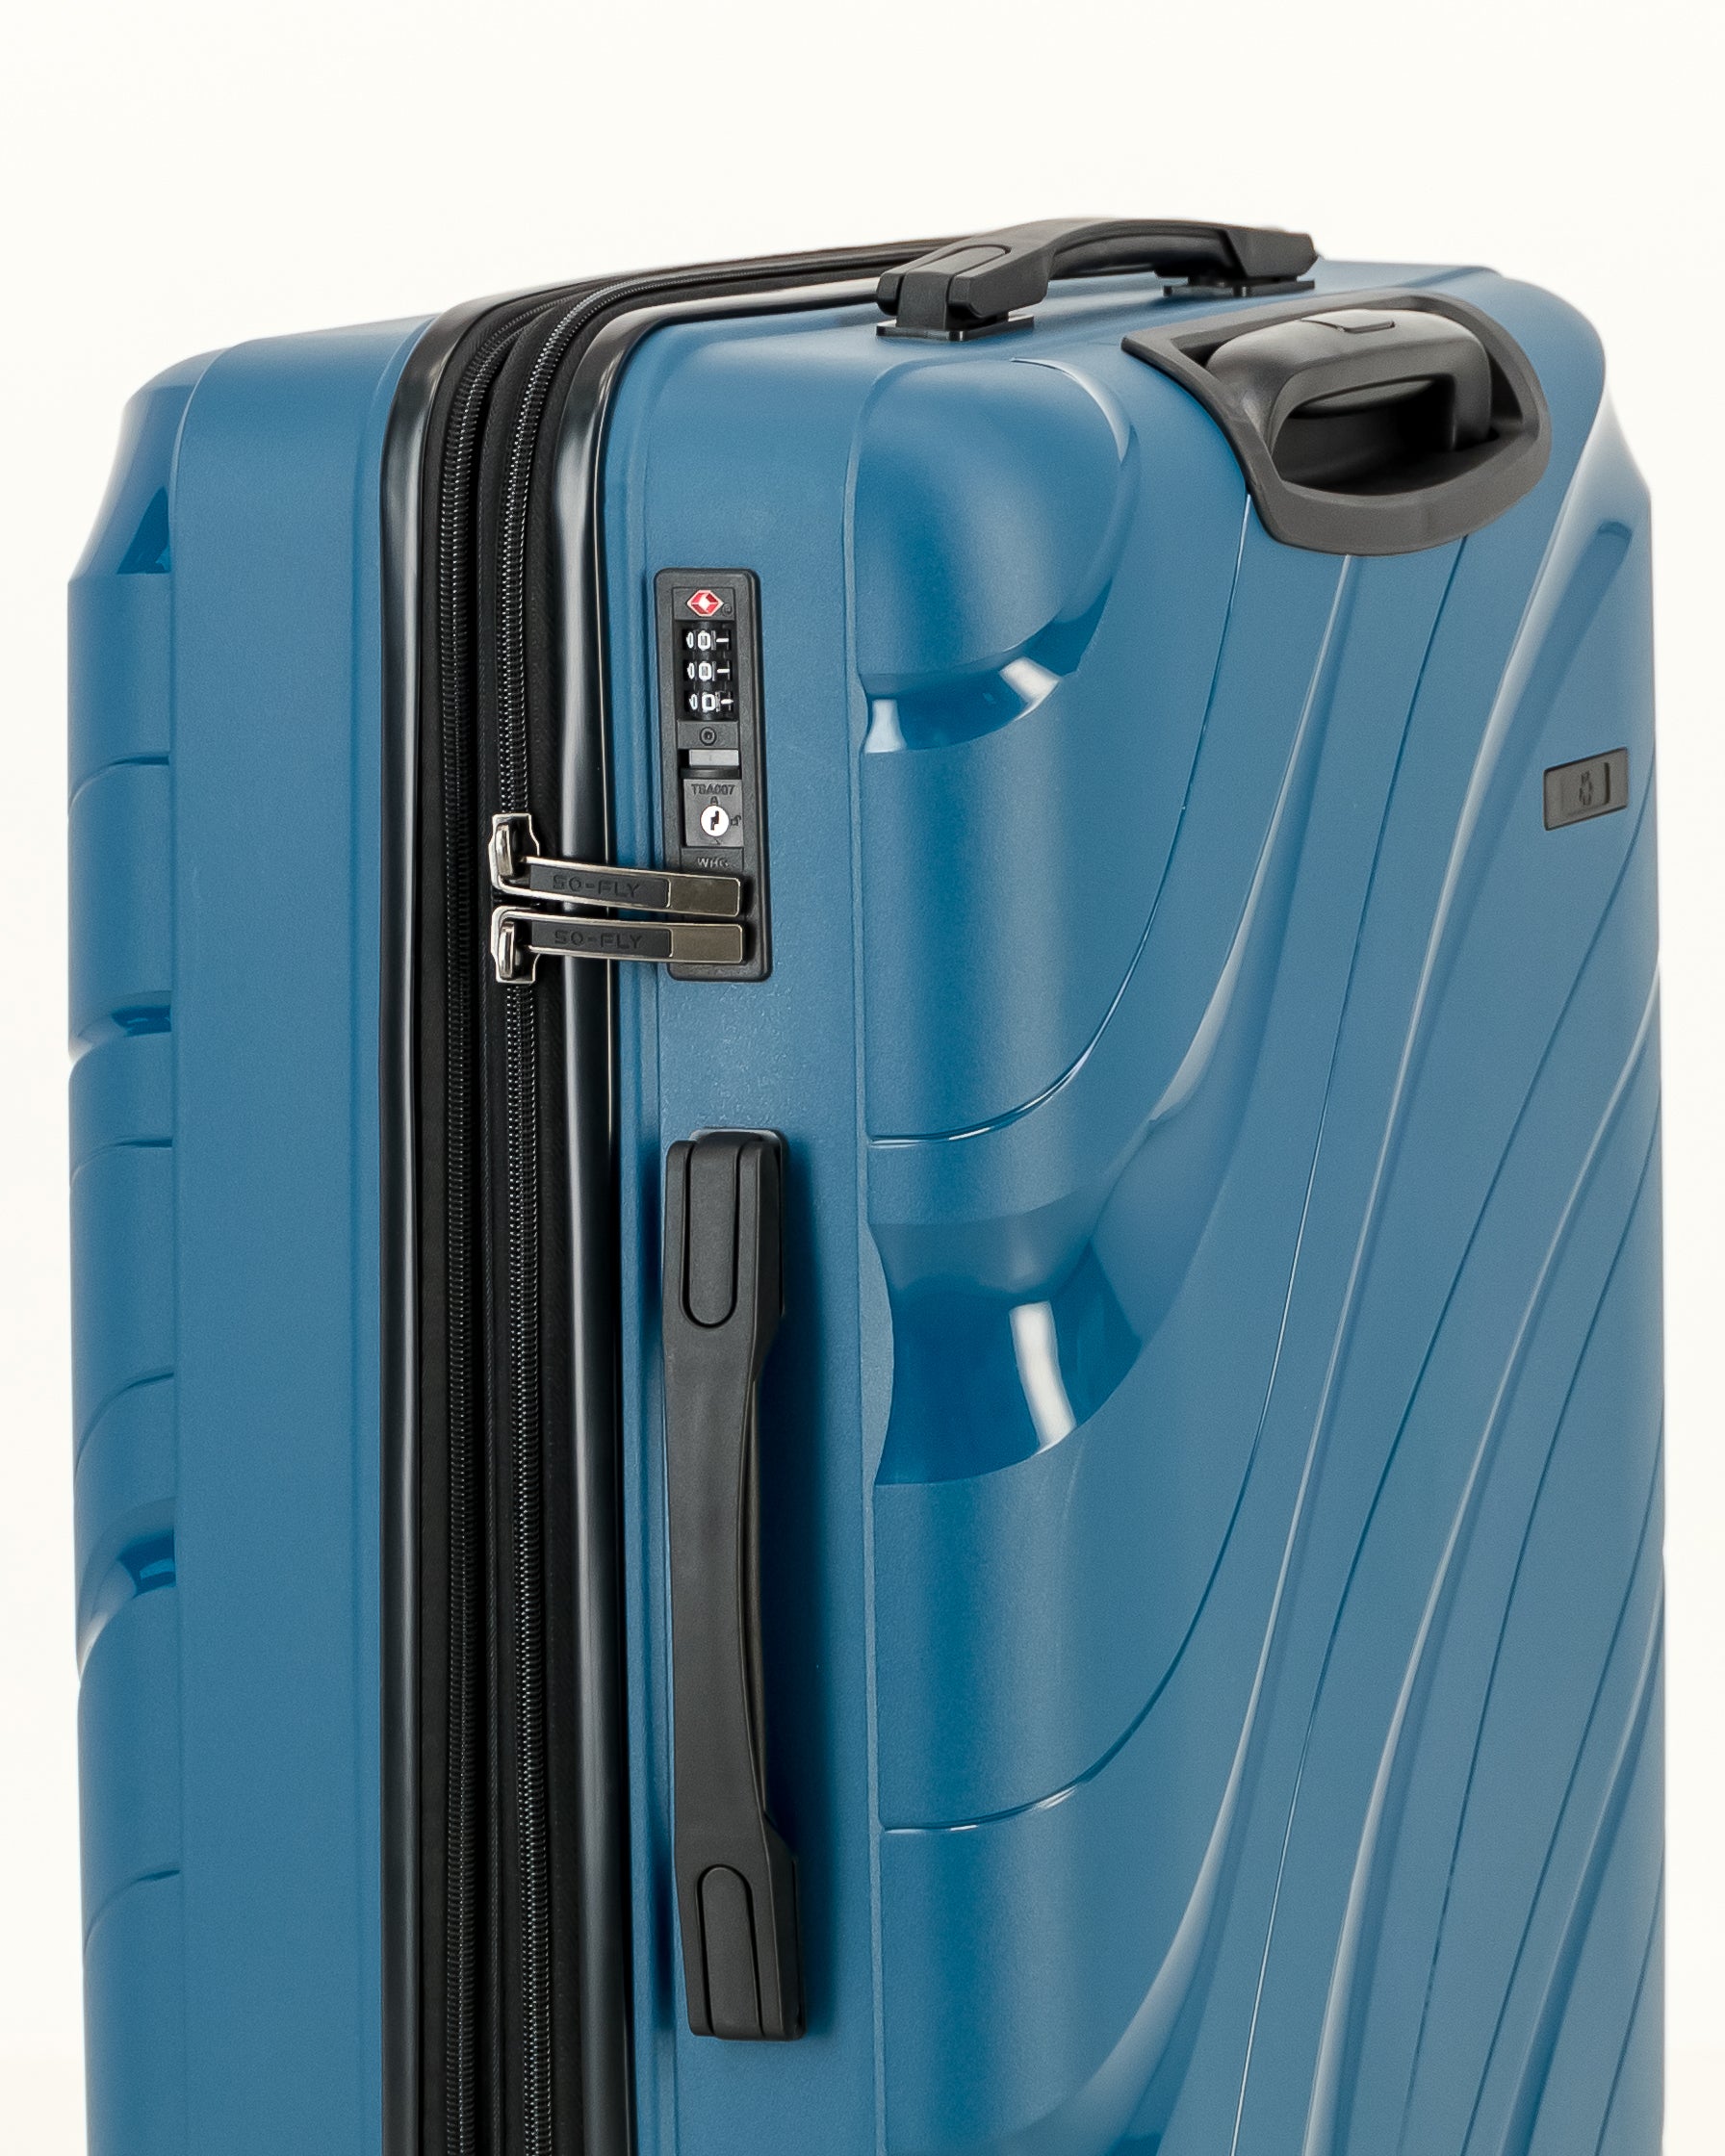 So-Fly Orbit 3 Piece Spinner Luggage Set - Dark Blue